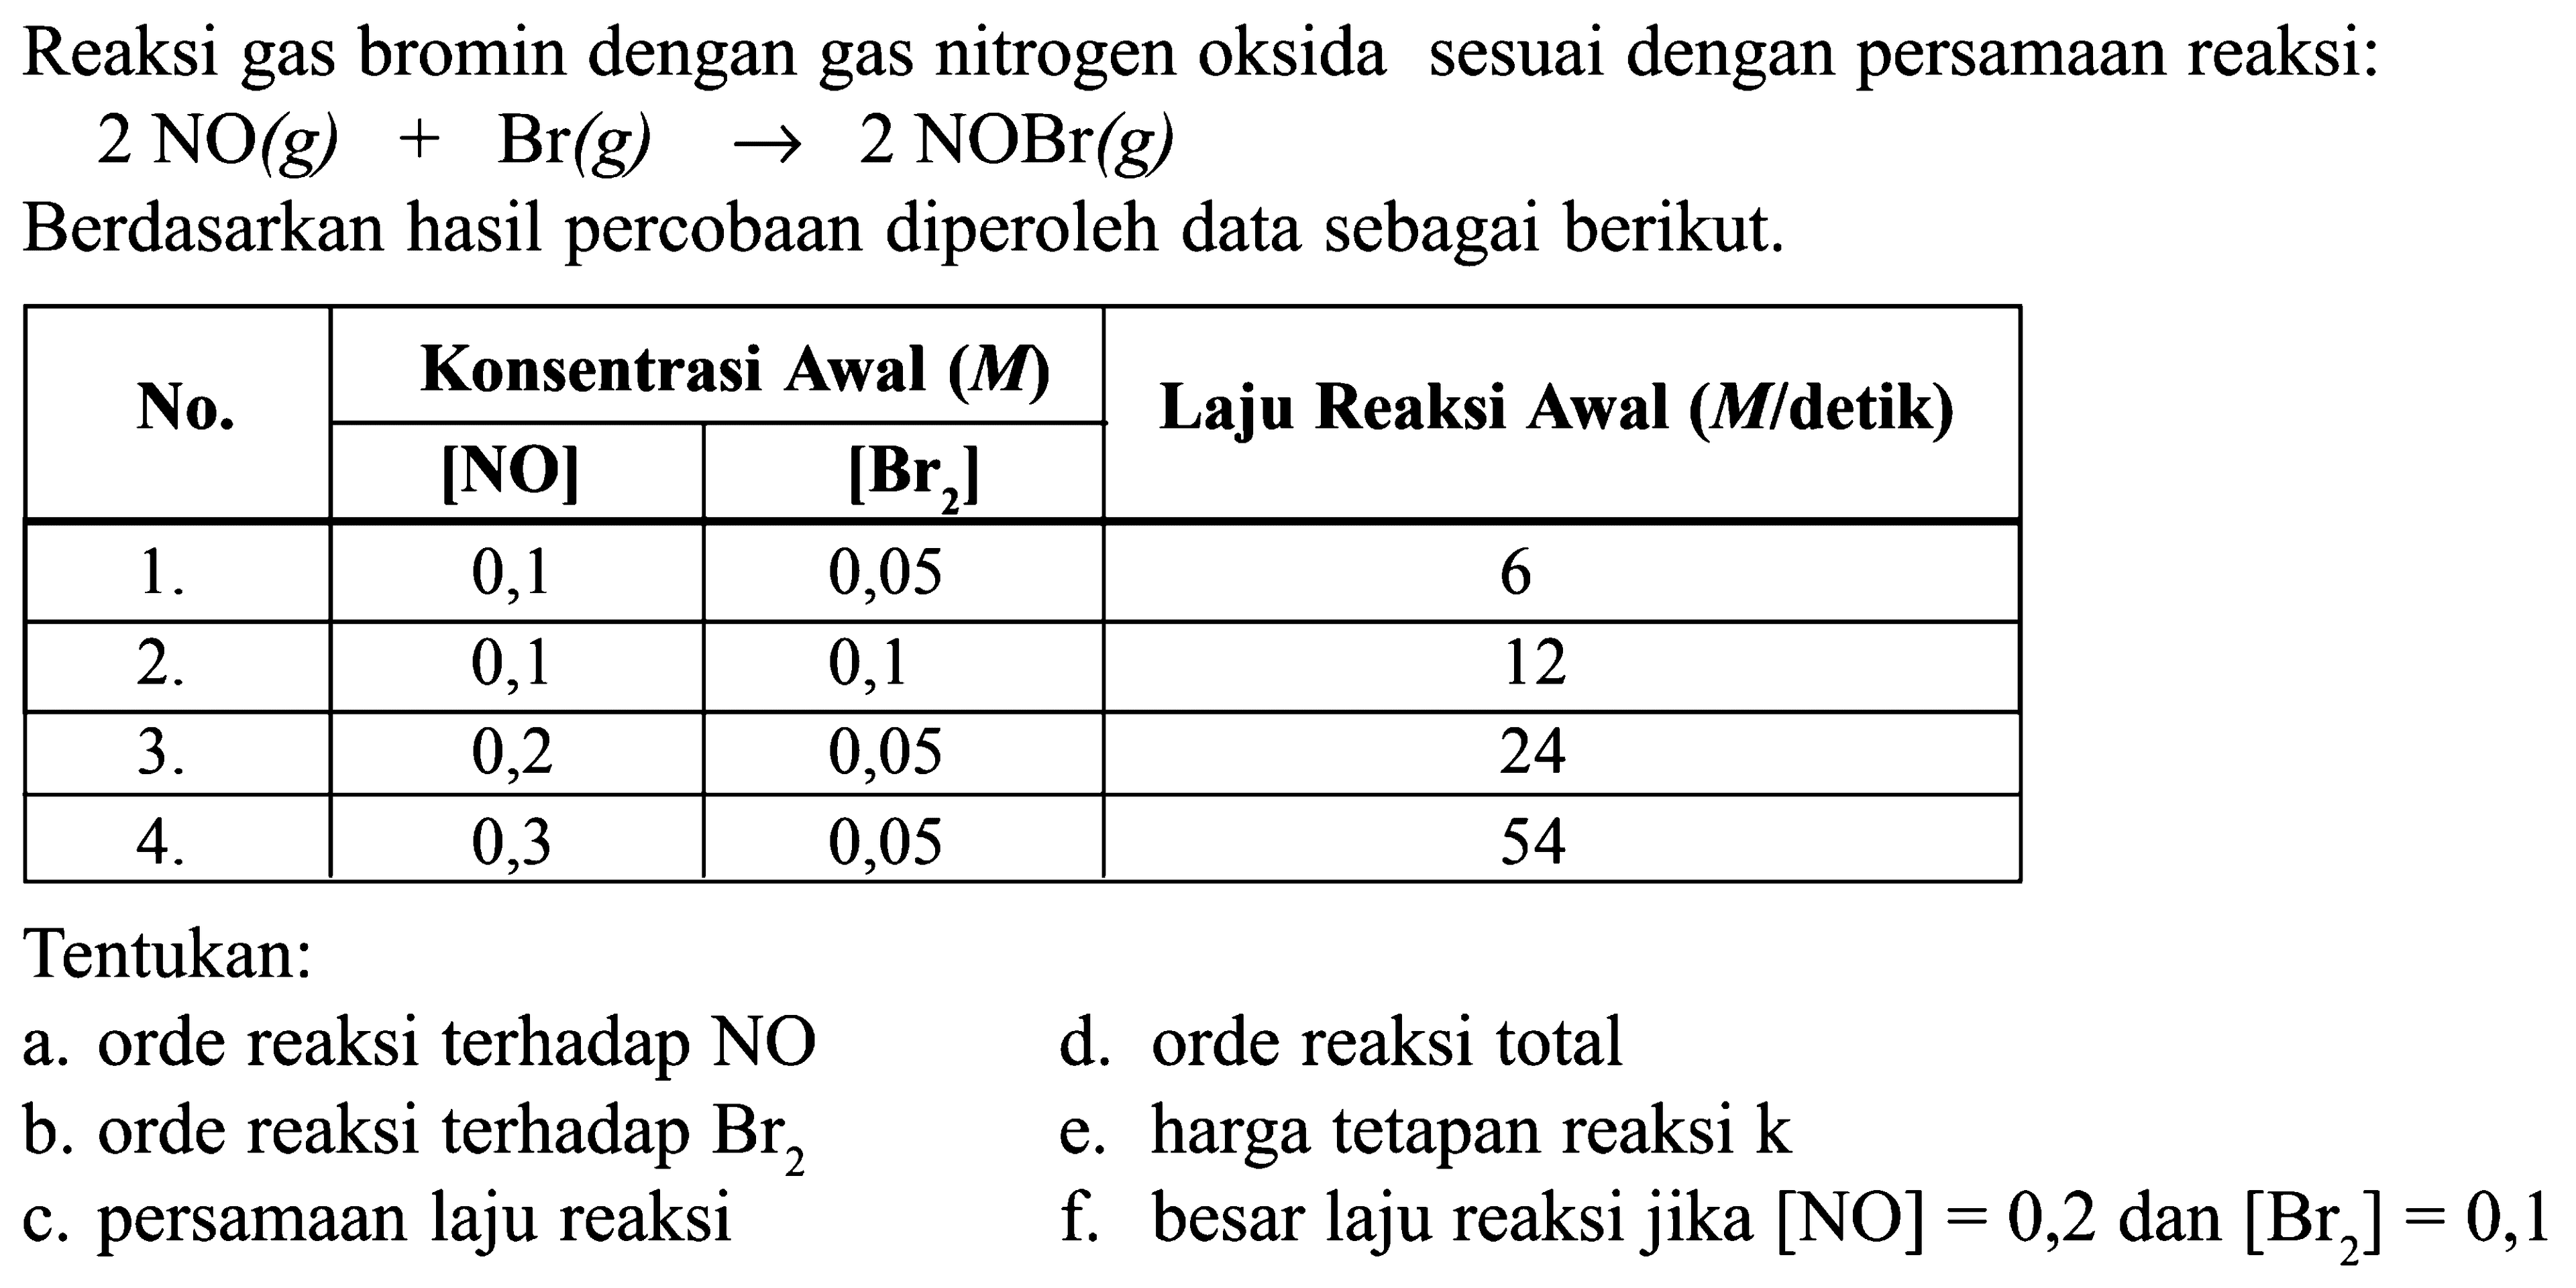 Reaksi gas bromin dengan gas nitrogen oksida sesuai dengan persamaan reaksi:2NO(g)+Br(g)->2NOBr(g)Berdasarkan hasil percobaan diperoleh data sebagai berikut.No. Konsentrasi Awal (M) Laju Reaksi Awal (M/detik)    2 - 3 [NO] [Br2]     1 .   0,1  0,05  6   2 .   0,1  0,1  12   3 .   0,2  0,05  24   4 .   0,3  0,05  54 Tentukan:a. orde reaksi terhadap NOd. orde reaksi totalb. orde reaksi terhadap Br2 e. harga tetapan reaksi k c. persamaan laju reaksif. besar laju reaksi jika  [NO]=0,2  dan  [Br2]=0,1 